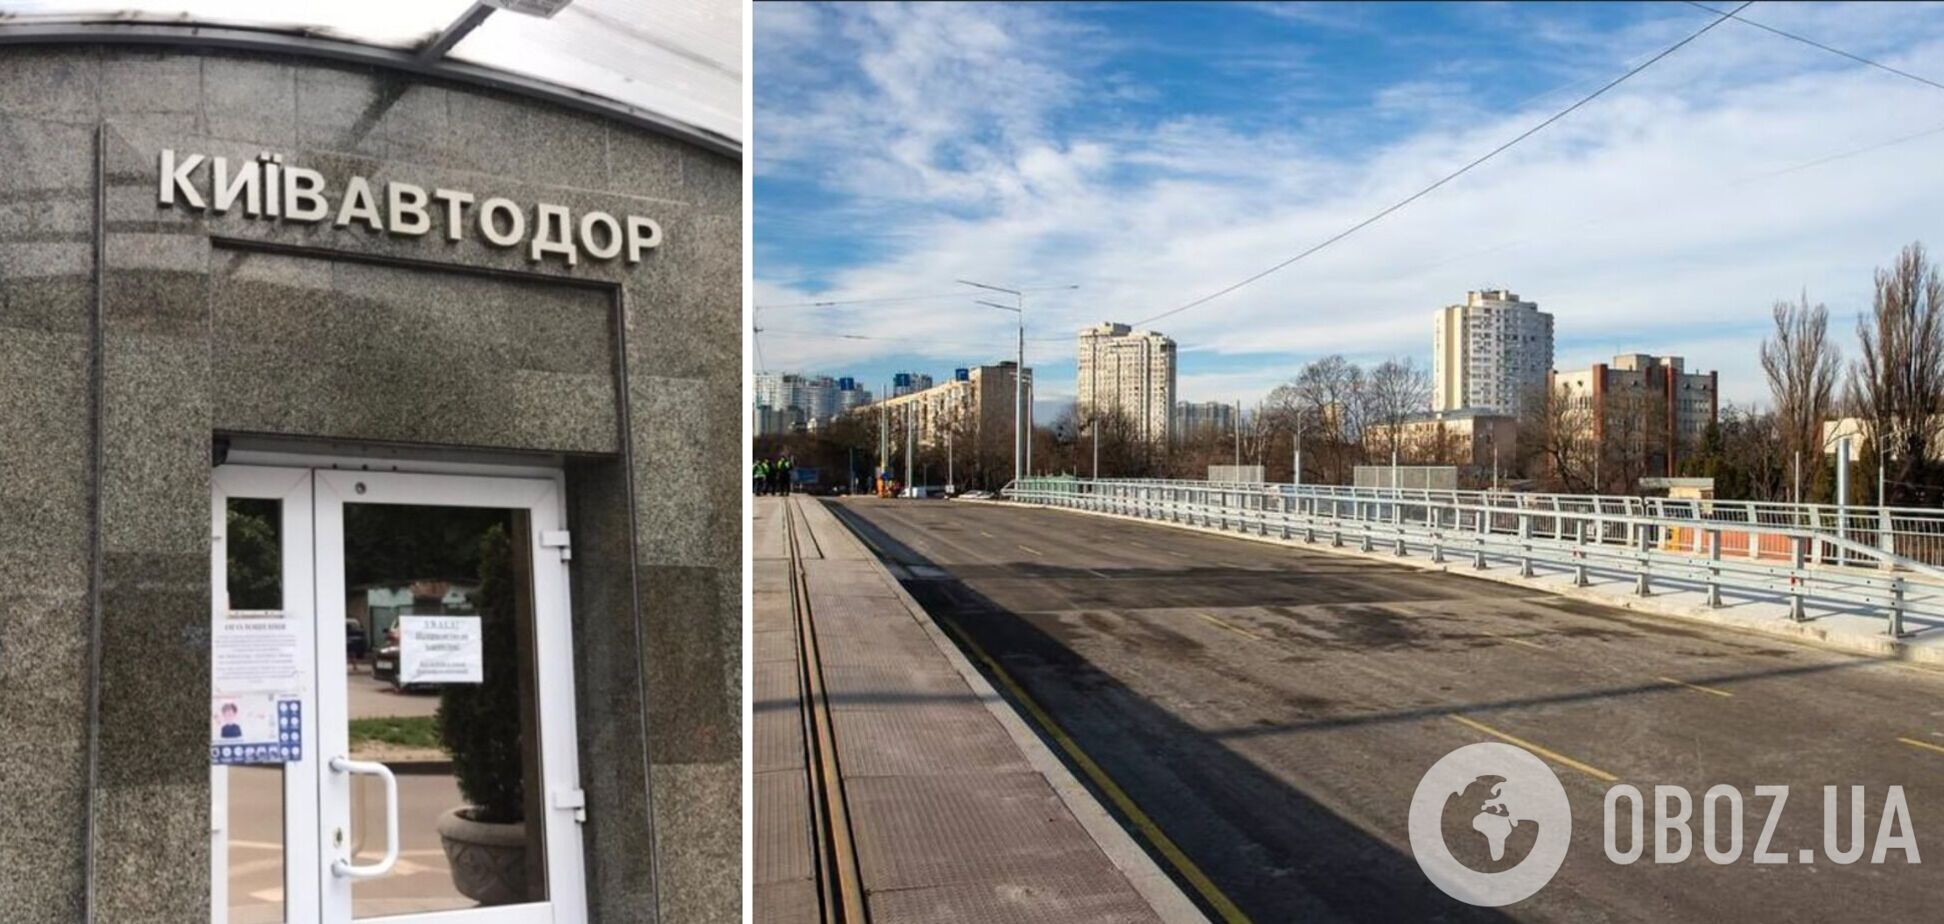 'Киевавтодор' прокомментировал информацию СМИ о завышении цен на ремонт Дегтяровского моста в столице